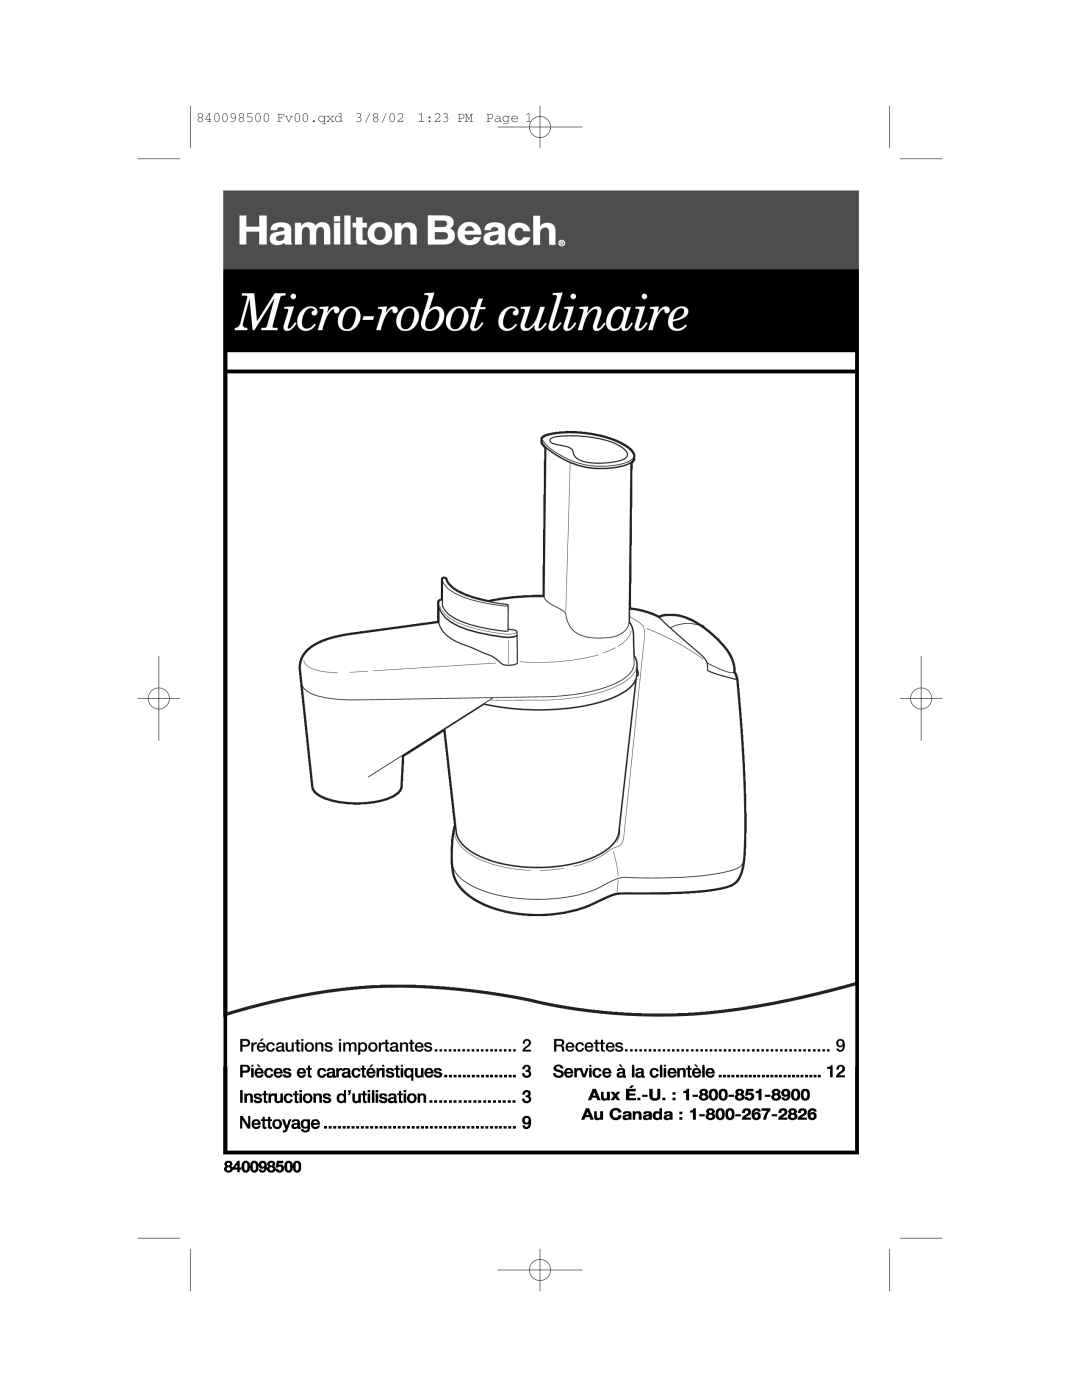 Hamilton Beach 70200 Micro-robot culinaire, Instructions d’utilisation, Aux É.-U. 1-800-851-8900 Au Canada, 840098500 